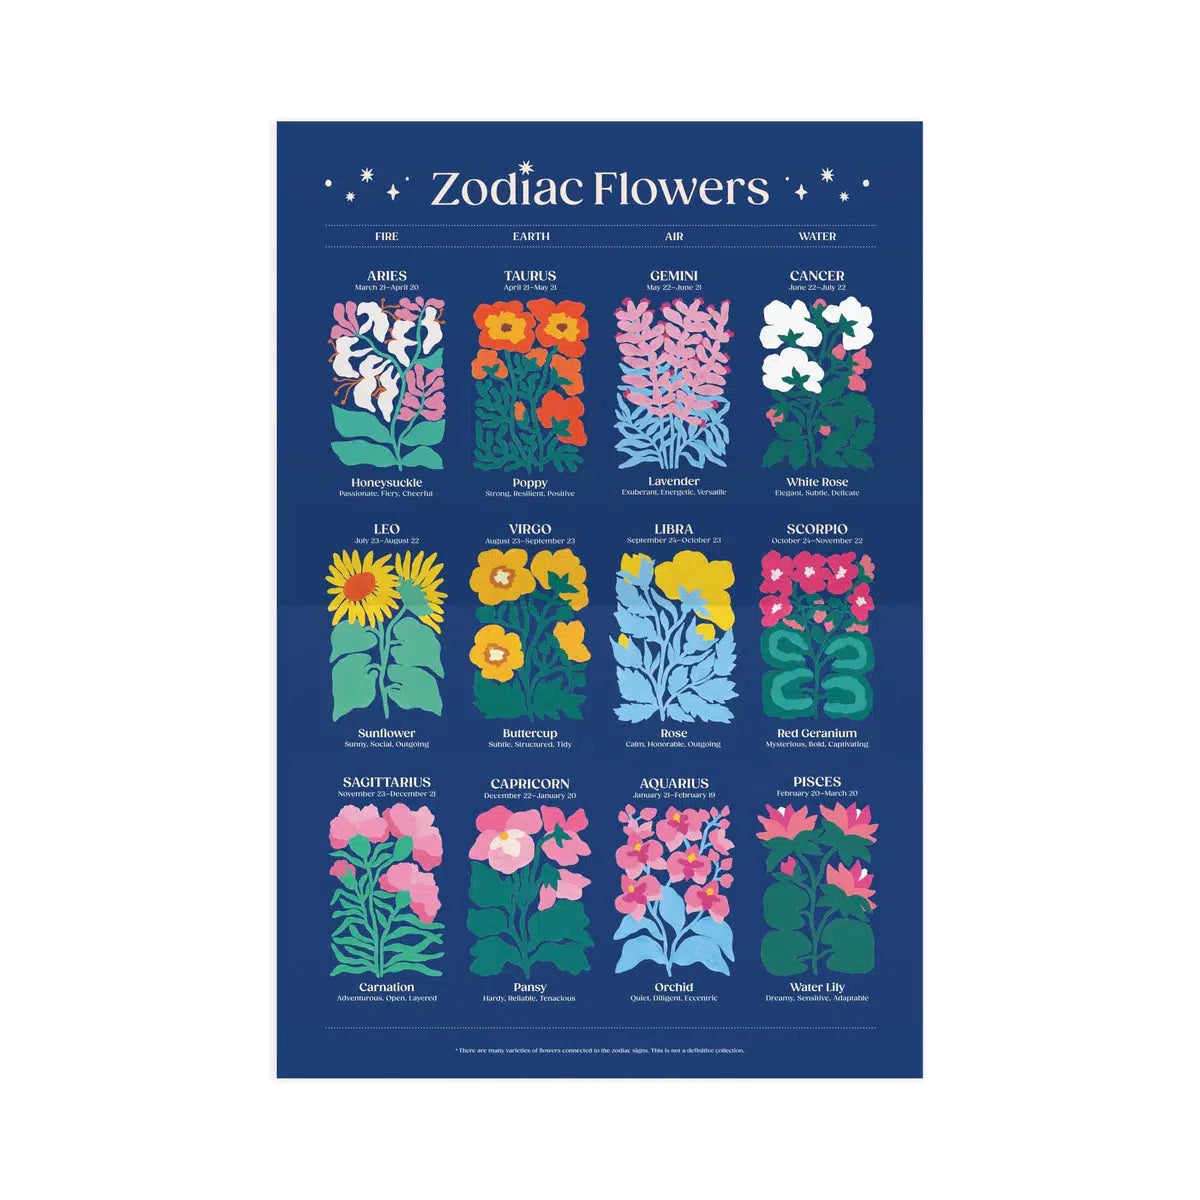 Zodiac Flowers 1000 Piece Jigsaw Puzzle Galison